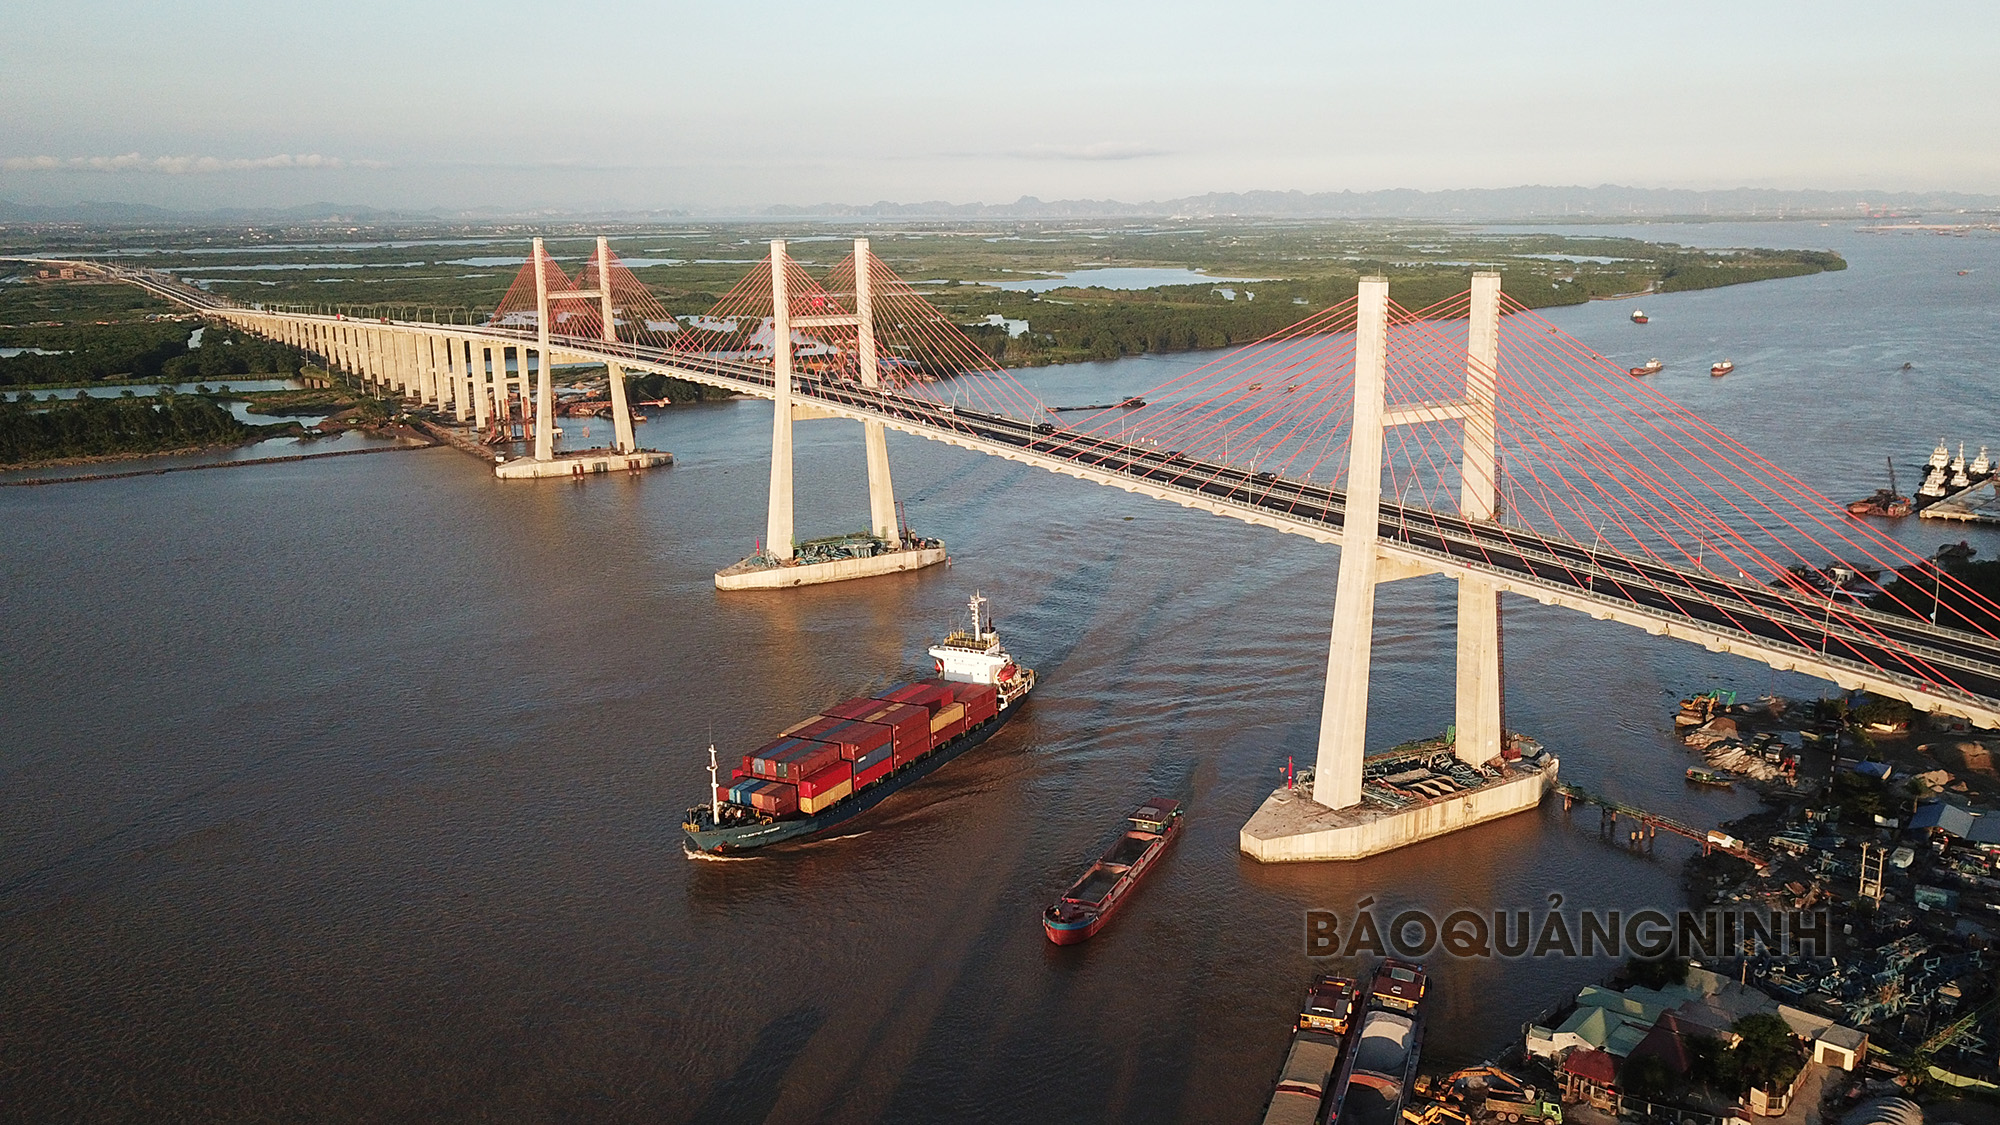 Cầu Bạch Đằng, cao tốc Hạ Long - Hải Phòng hoàn thành đưa vào sử dụng tháng 9/2018là bước đột phá quan trọng về hạ tầng giao thông kết nối vùng kinh tế trọng điểm phía Bắc